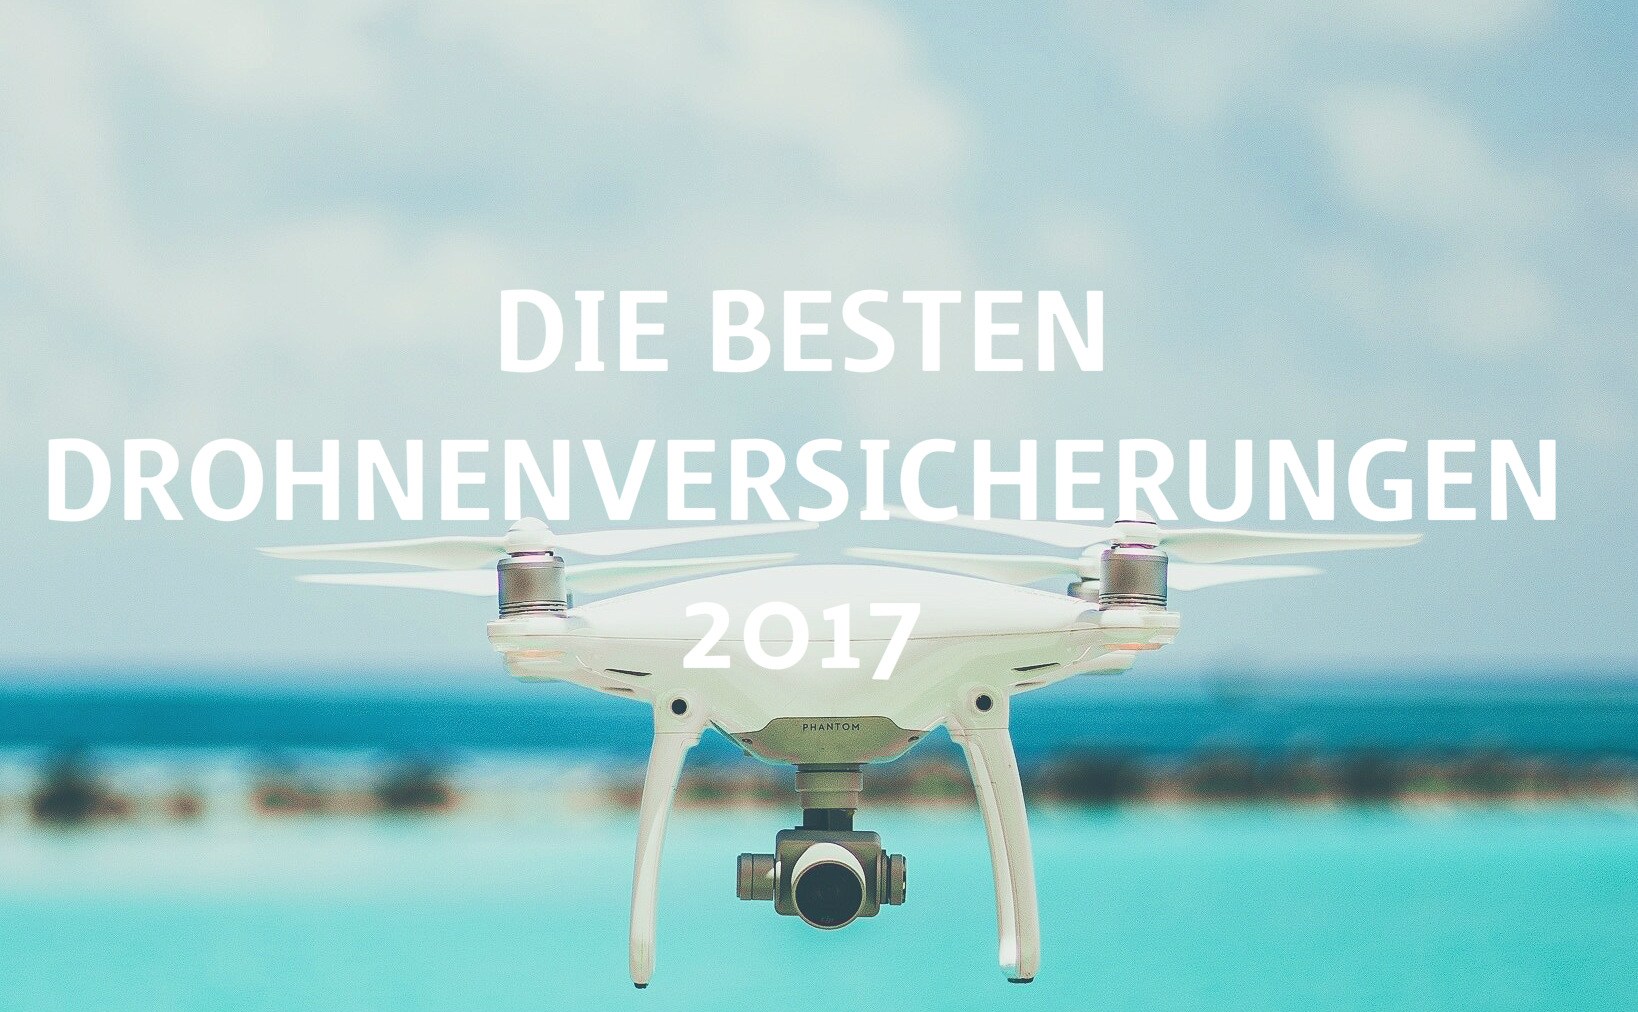 Die-besten-Drohnenversicherungen-2017_Titelnbild